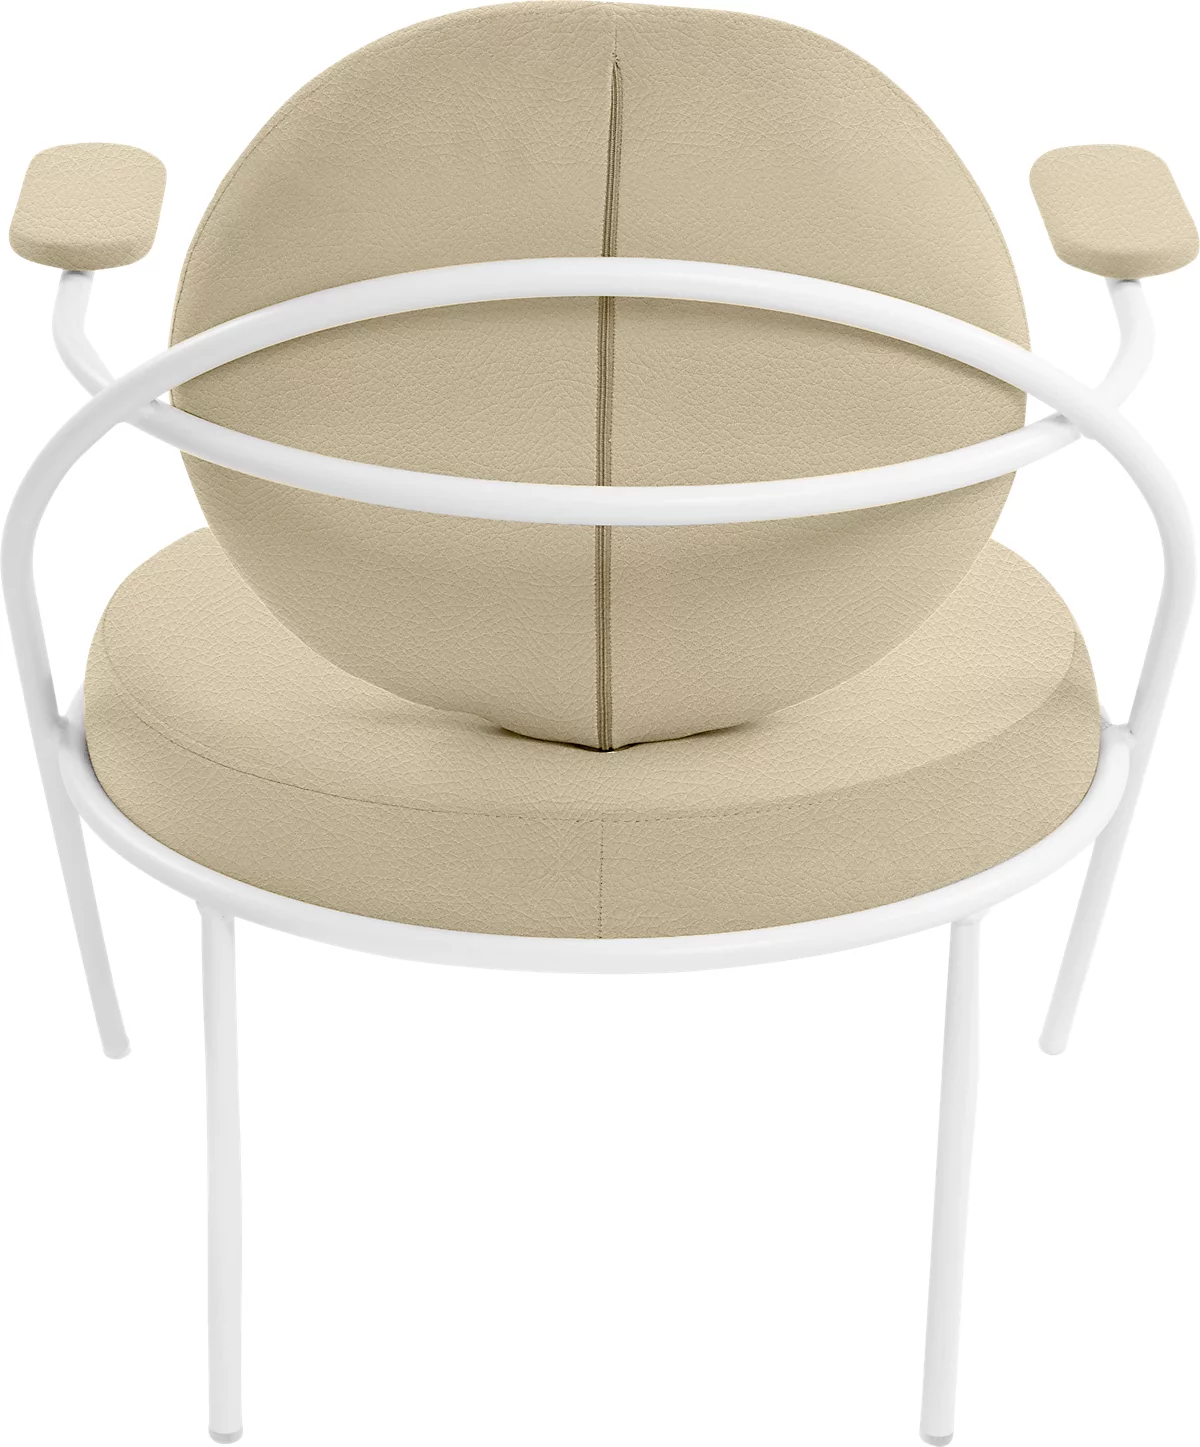 Sessel Meet by Paperflow Saturne, mit Armlehnen, B 700 x T 730 x H 880 mm, Stahlrohr, Kunstleder, Weiß/Elfenbein